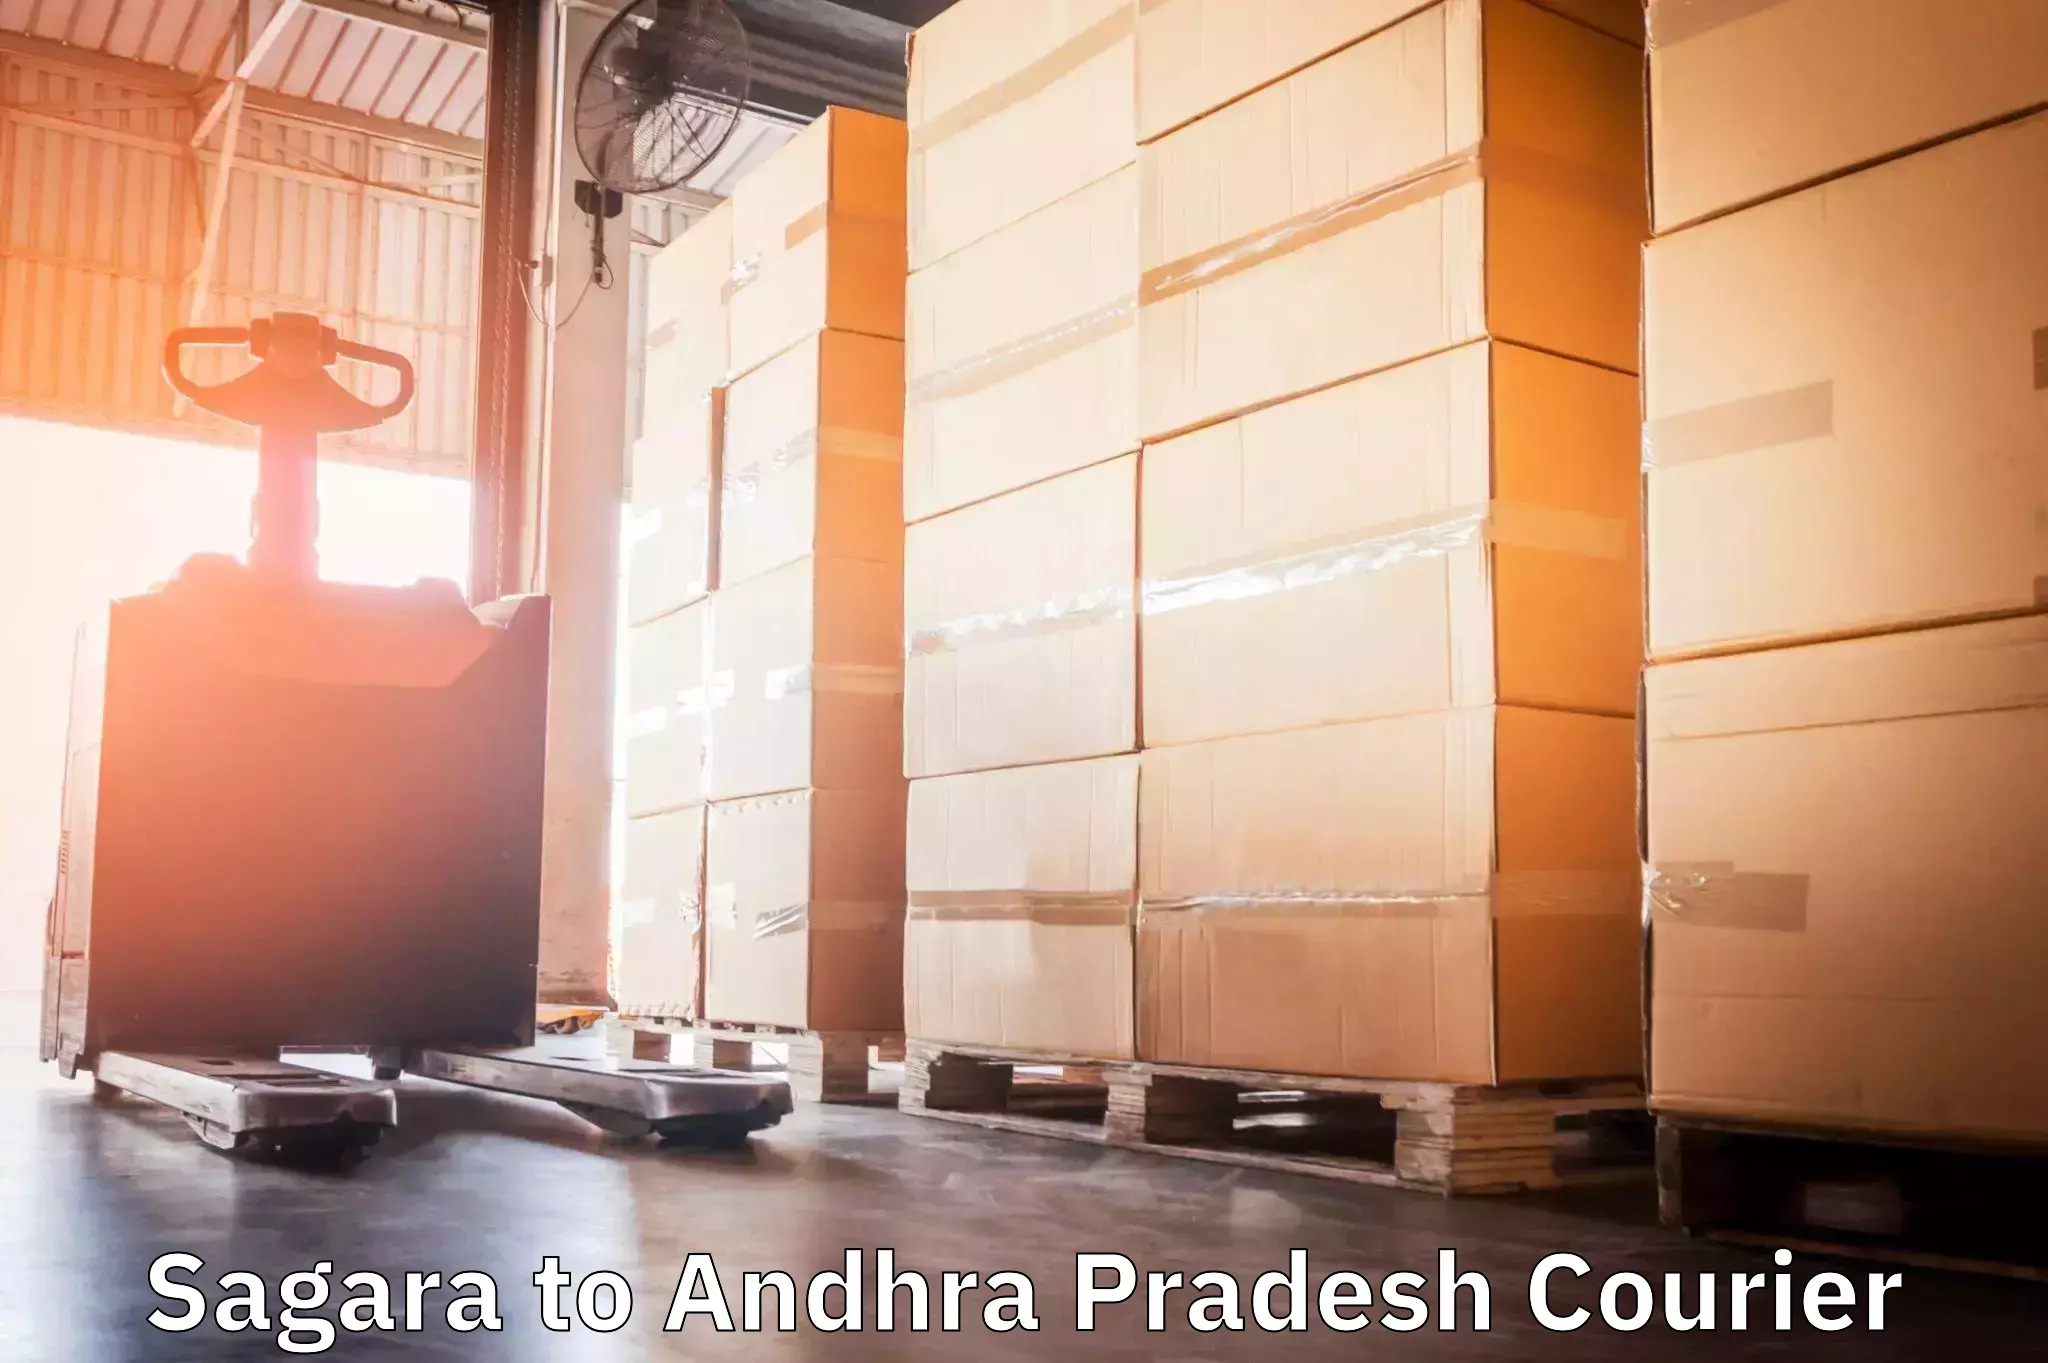 24-hour courier services Sagara to Andhra Pradesh